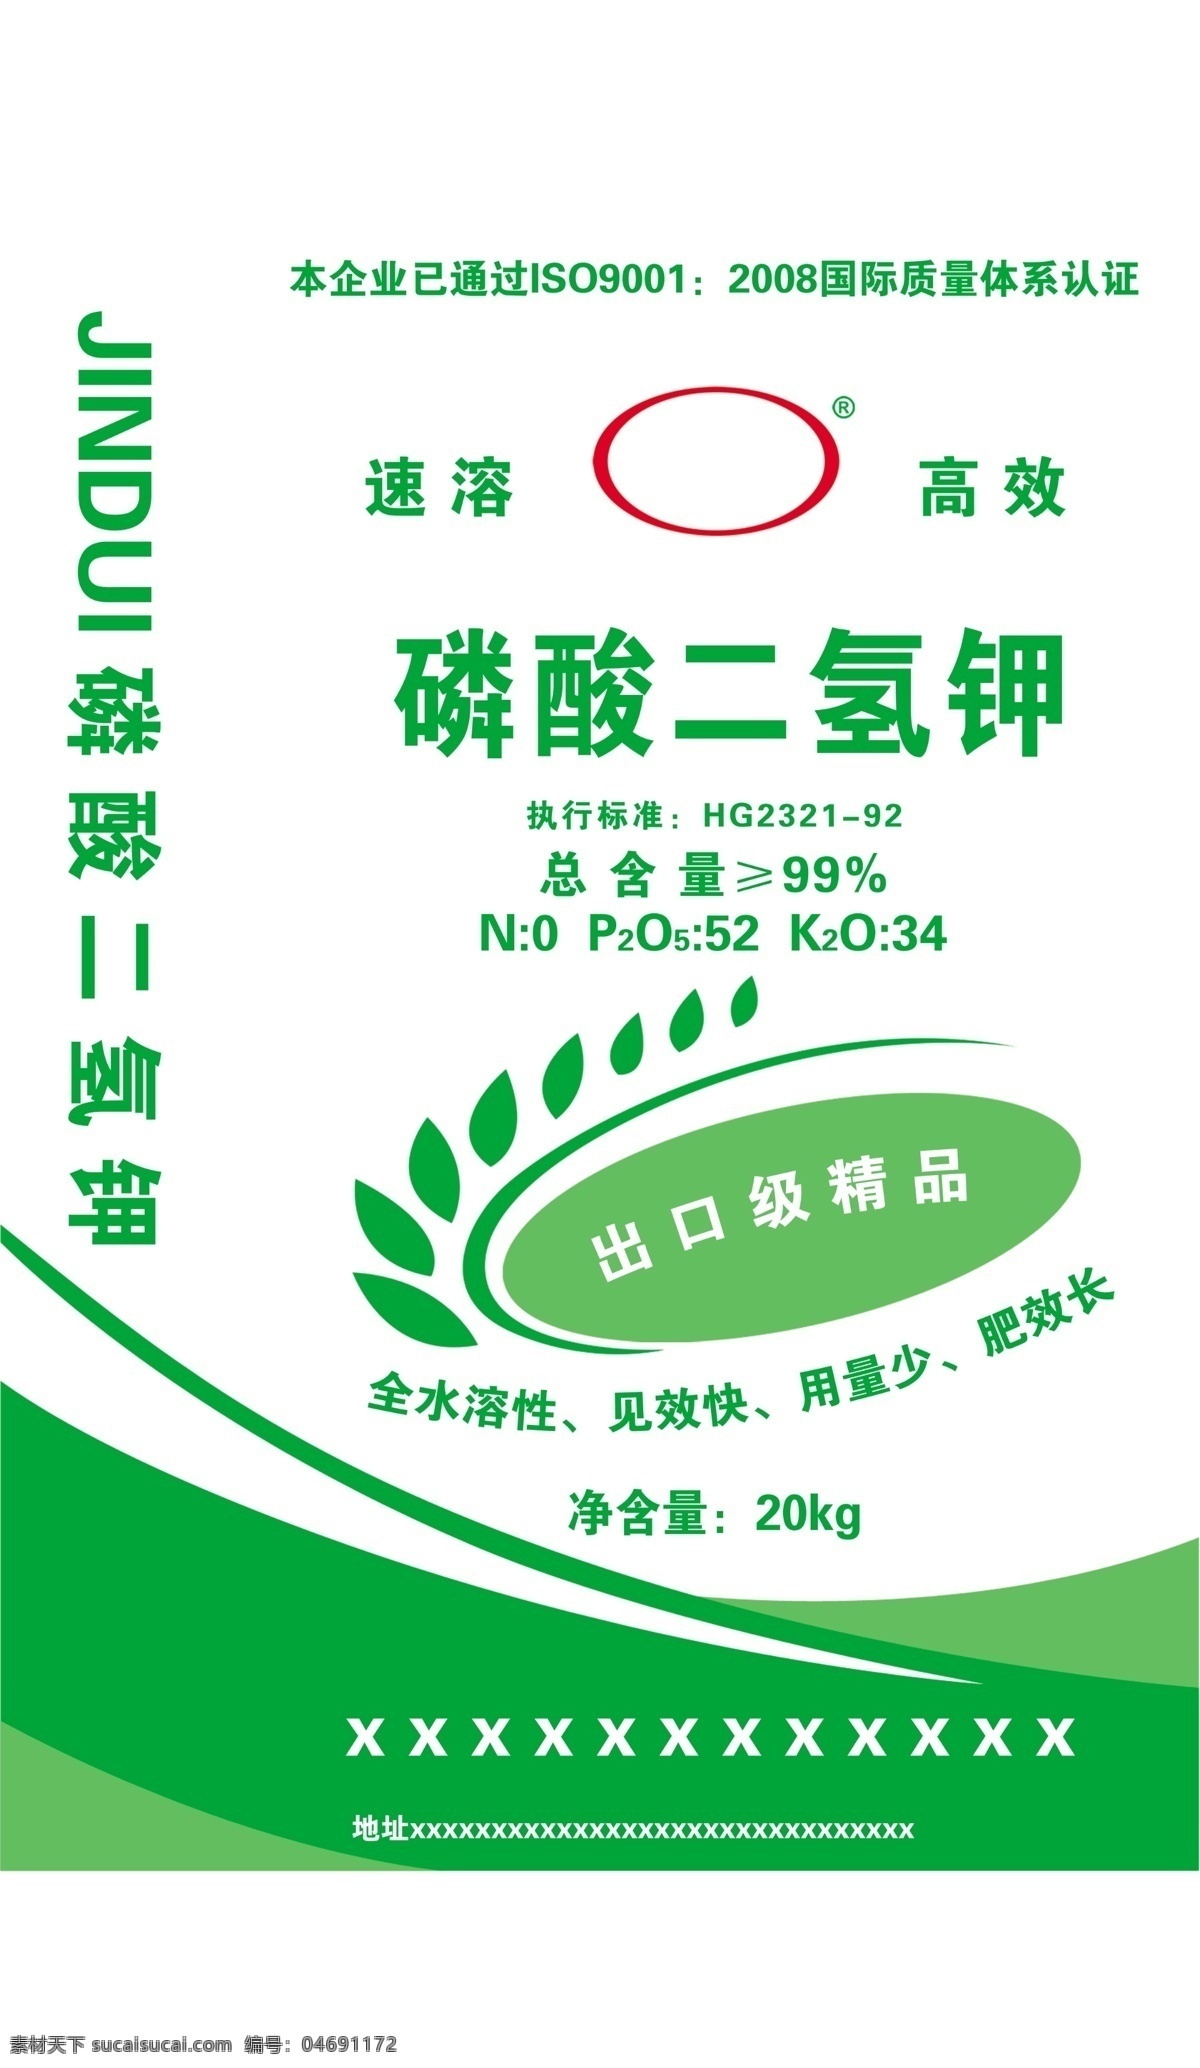 磷酸二氢钾 肥料袋 花边 底图 包装设计 广告设计模板 源文件